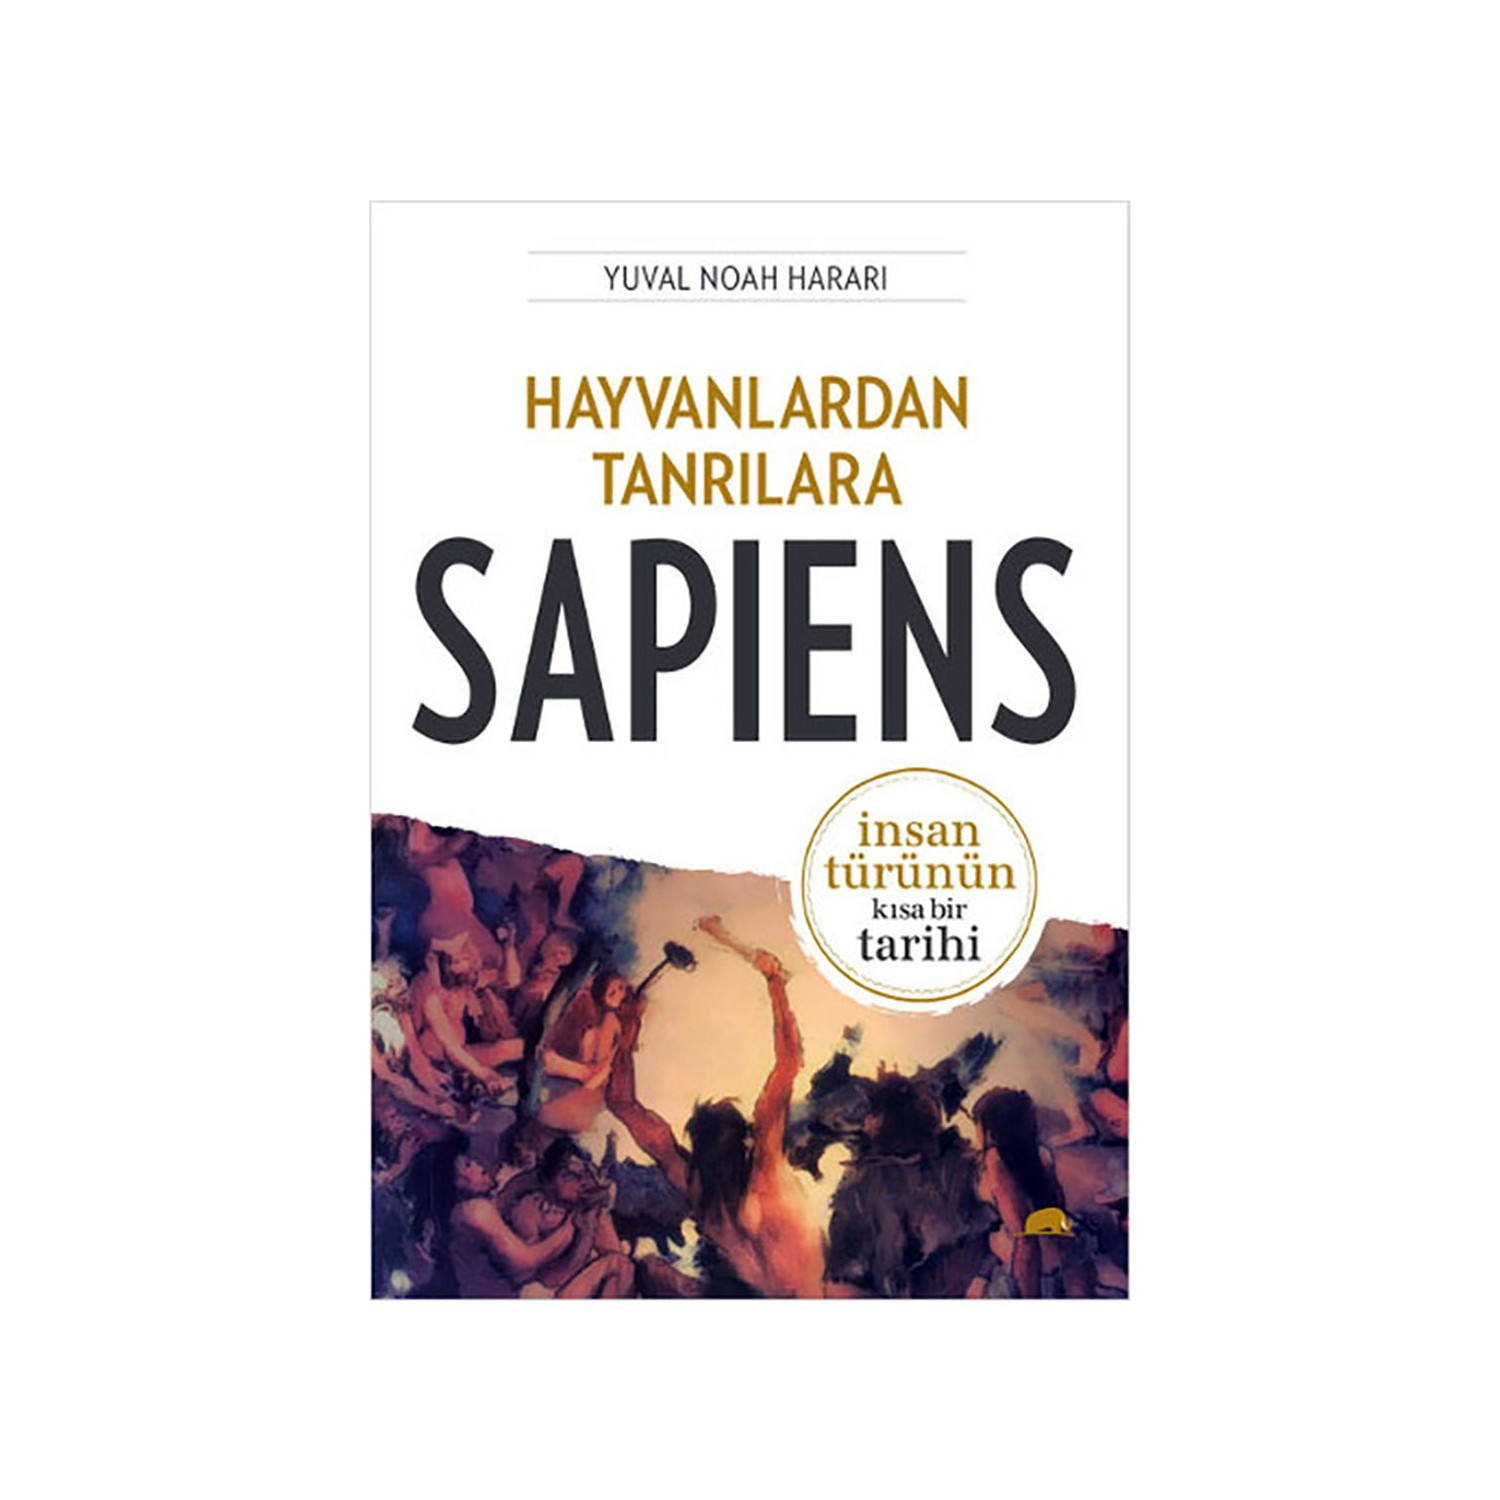 Hayvanlardan Tanrılara: Sapiens - İnsan Türünün Kısa Bir Tarihi - Yuval Noah Harari